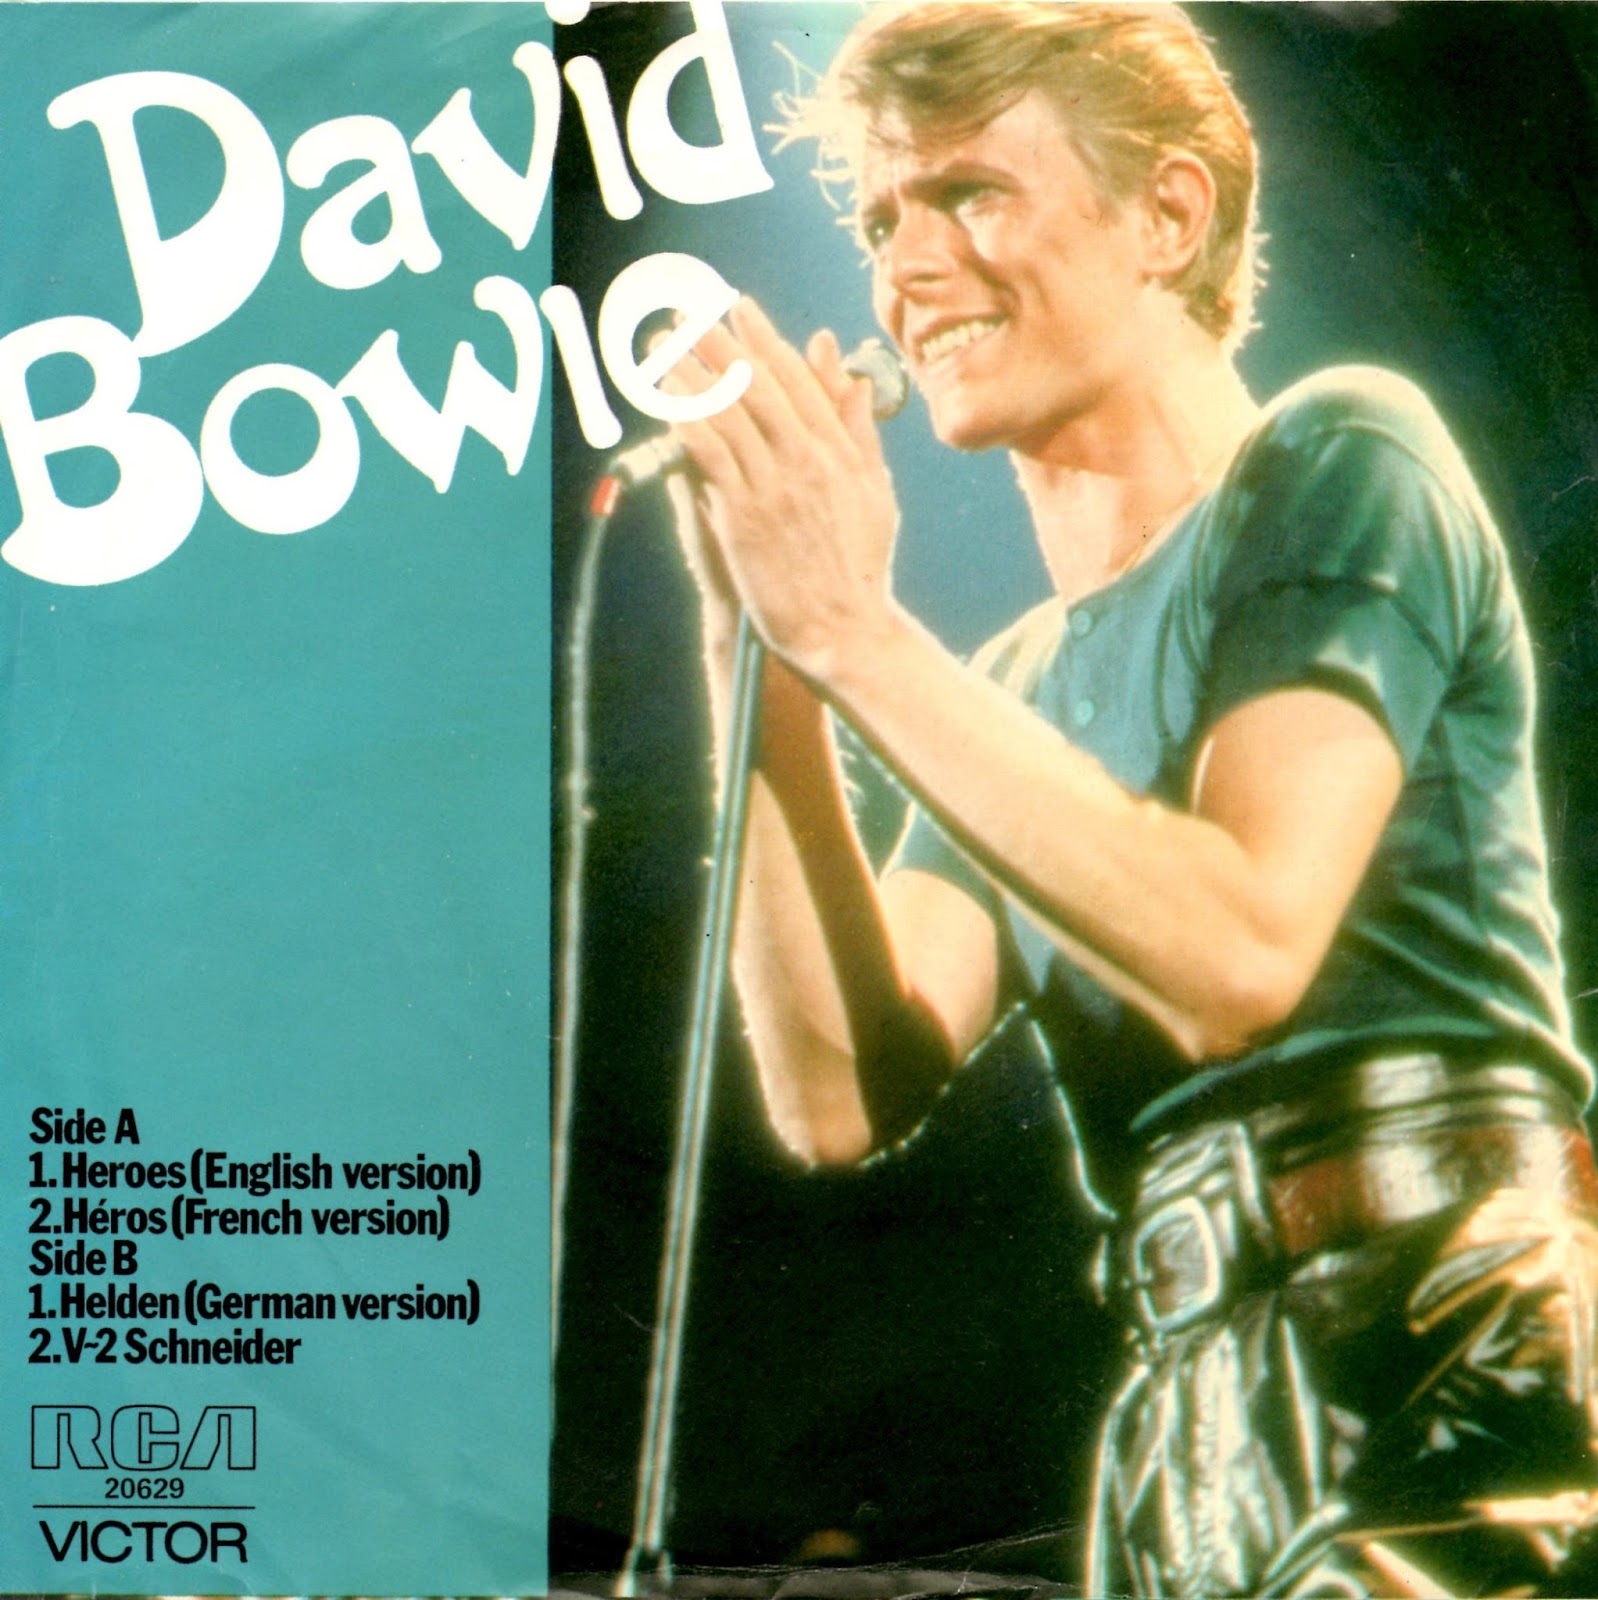 Песня герой на английском. David Bowie Heroes 1977. David Bowie альбом 1977 “Heroes”. Дэвид Боуи альбом Heroes. David Bowie Low 1977.